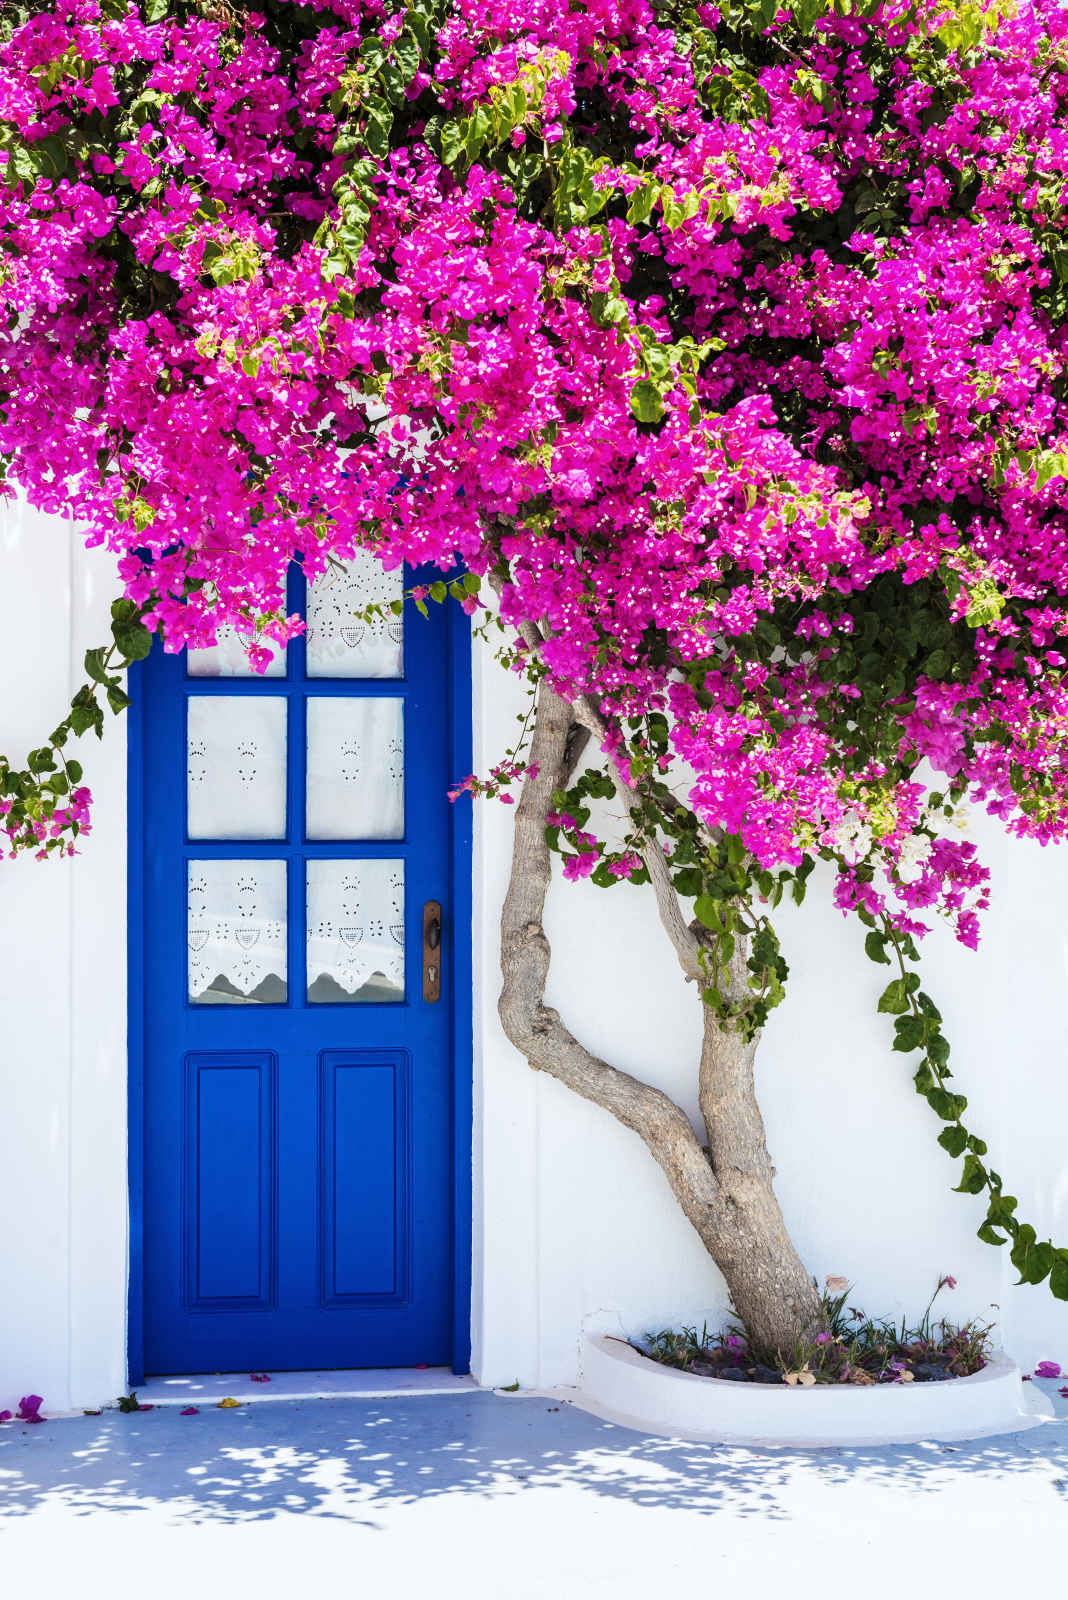 Maisons blanches traditionnelles couverte de bougainvilliers en fleur, Santorin, Cyclades, Grèce